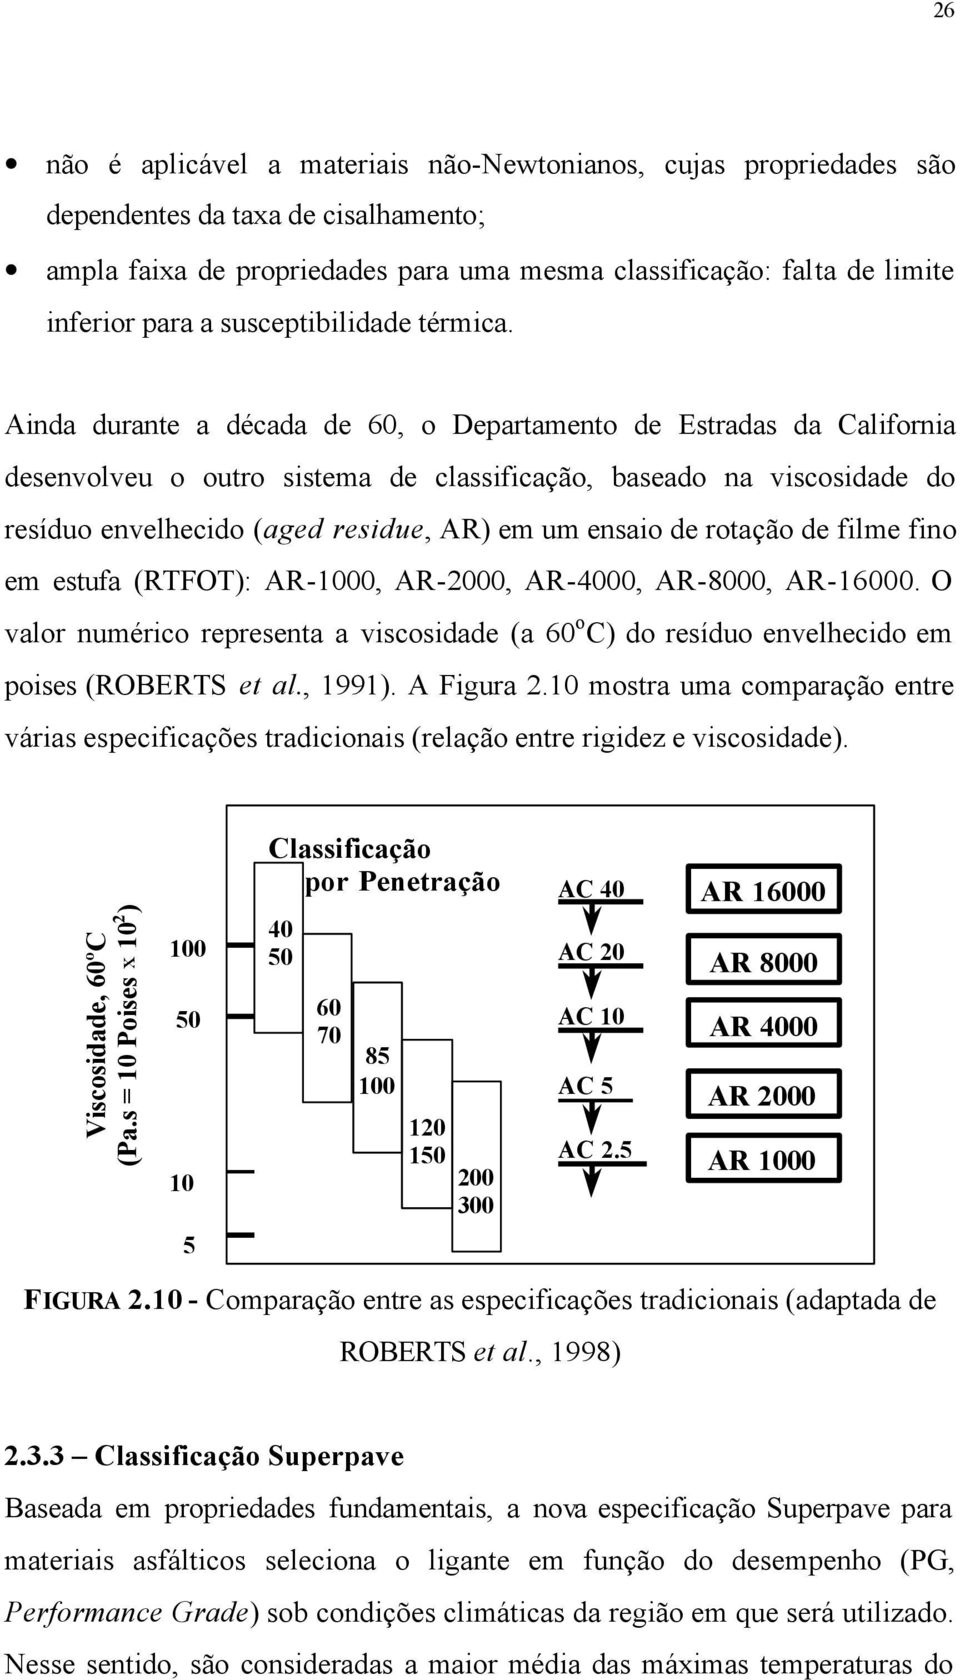 Ainda durante a década de 60, o Departamento de Estradas da California desenvolveu o outro sistema de classificação, baseado na viscosidade do resíduo envelhecido (aged residue, AR) em um ensaio de